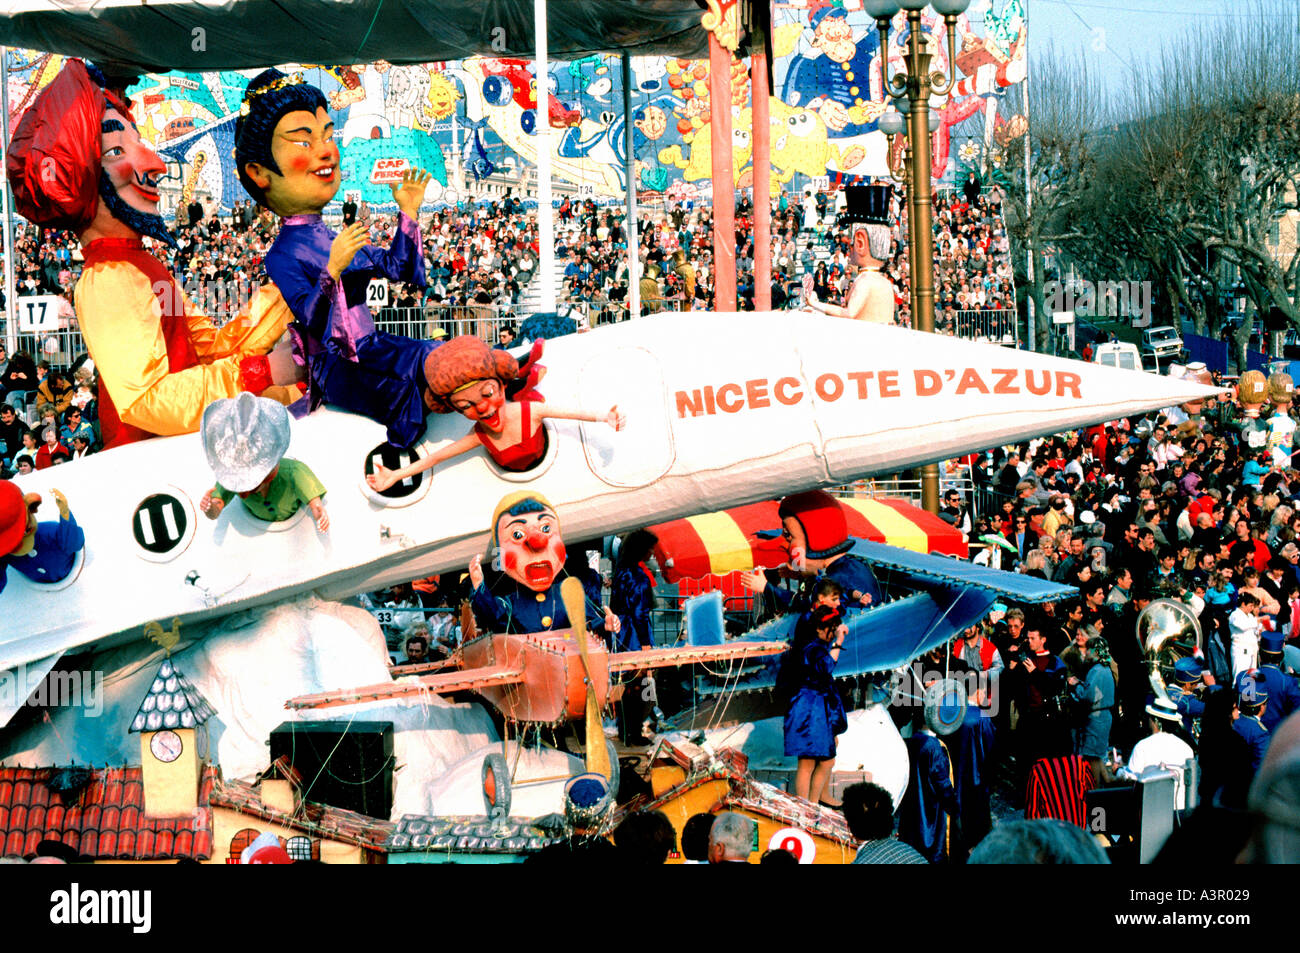 NIZZA, FRANKREICH, große Menge von Menschen feiern beim Karneval VON NIZZA Karneval FESTWAGEN, Bräuche und Traditionen Frankreich Stockfoto